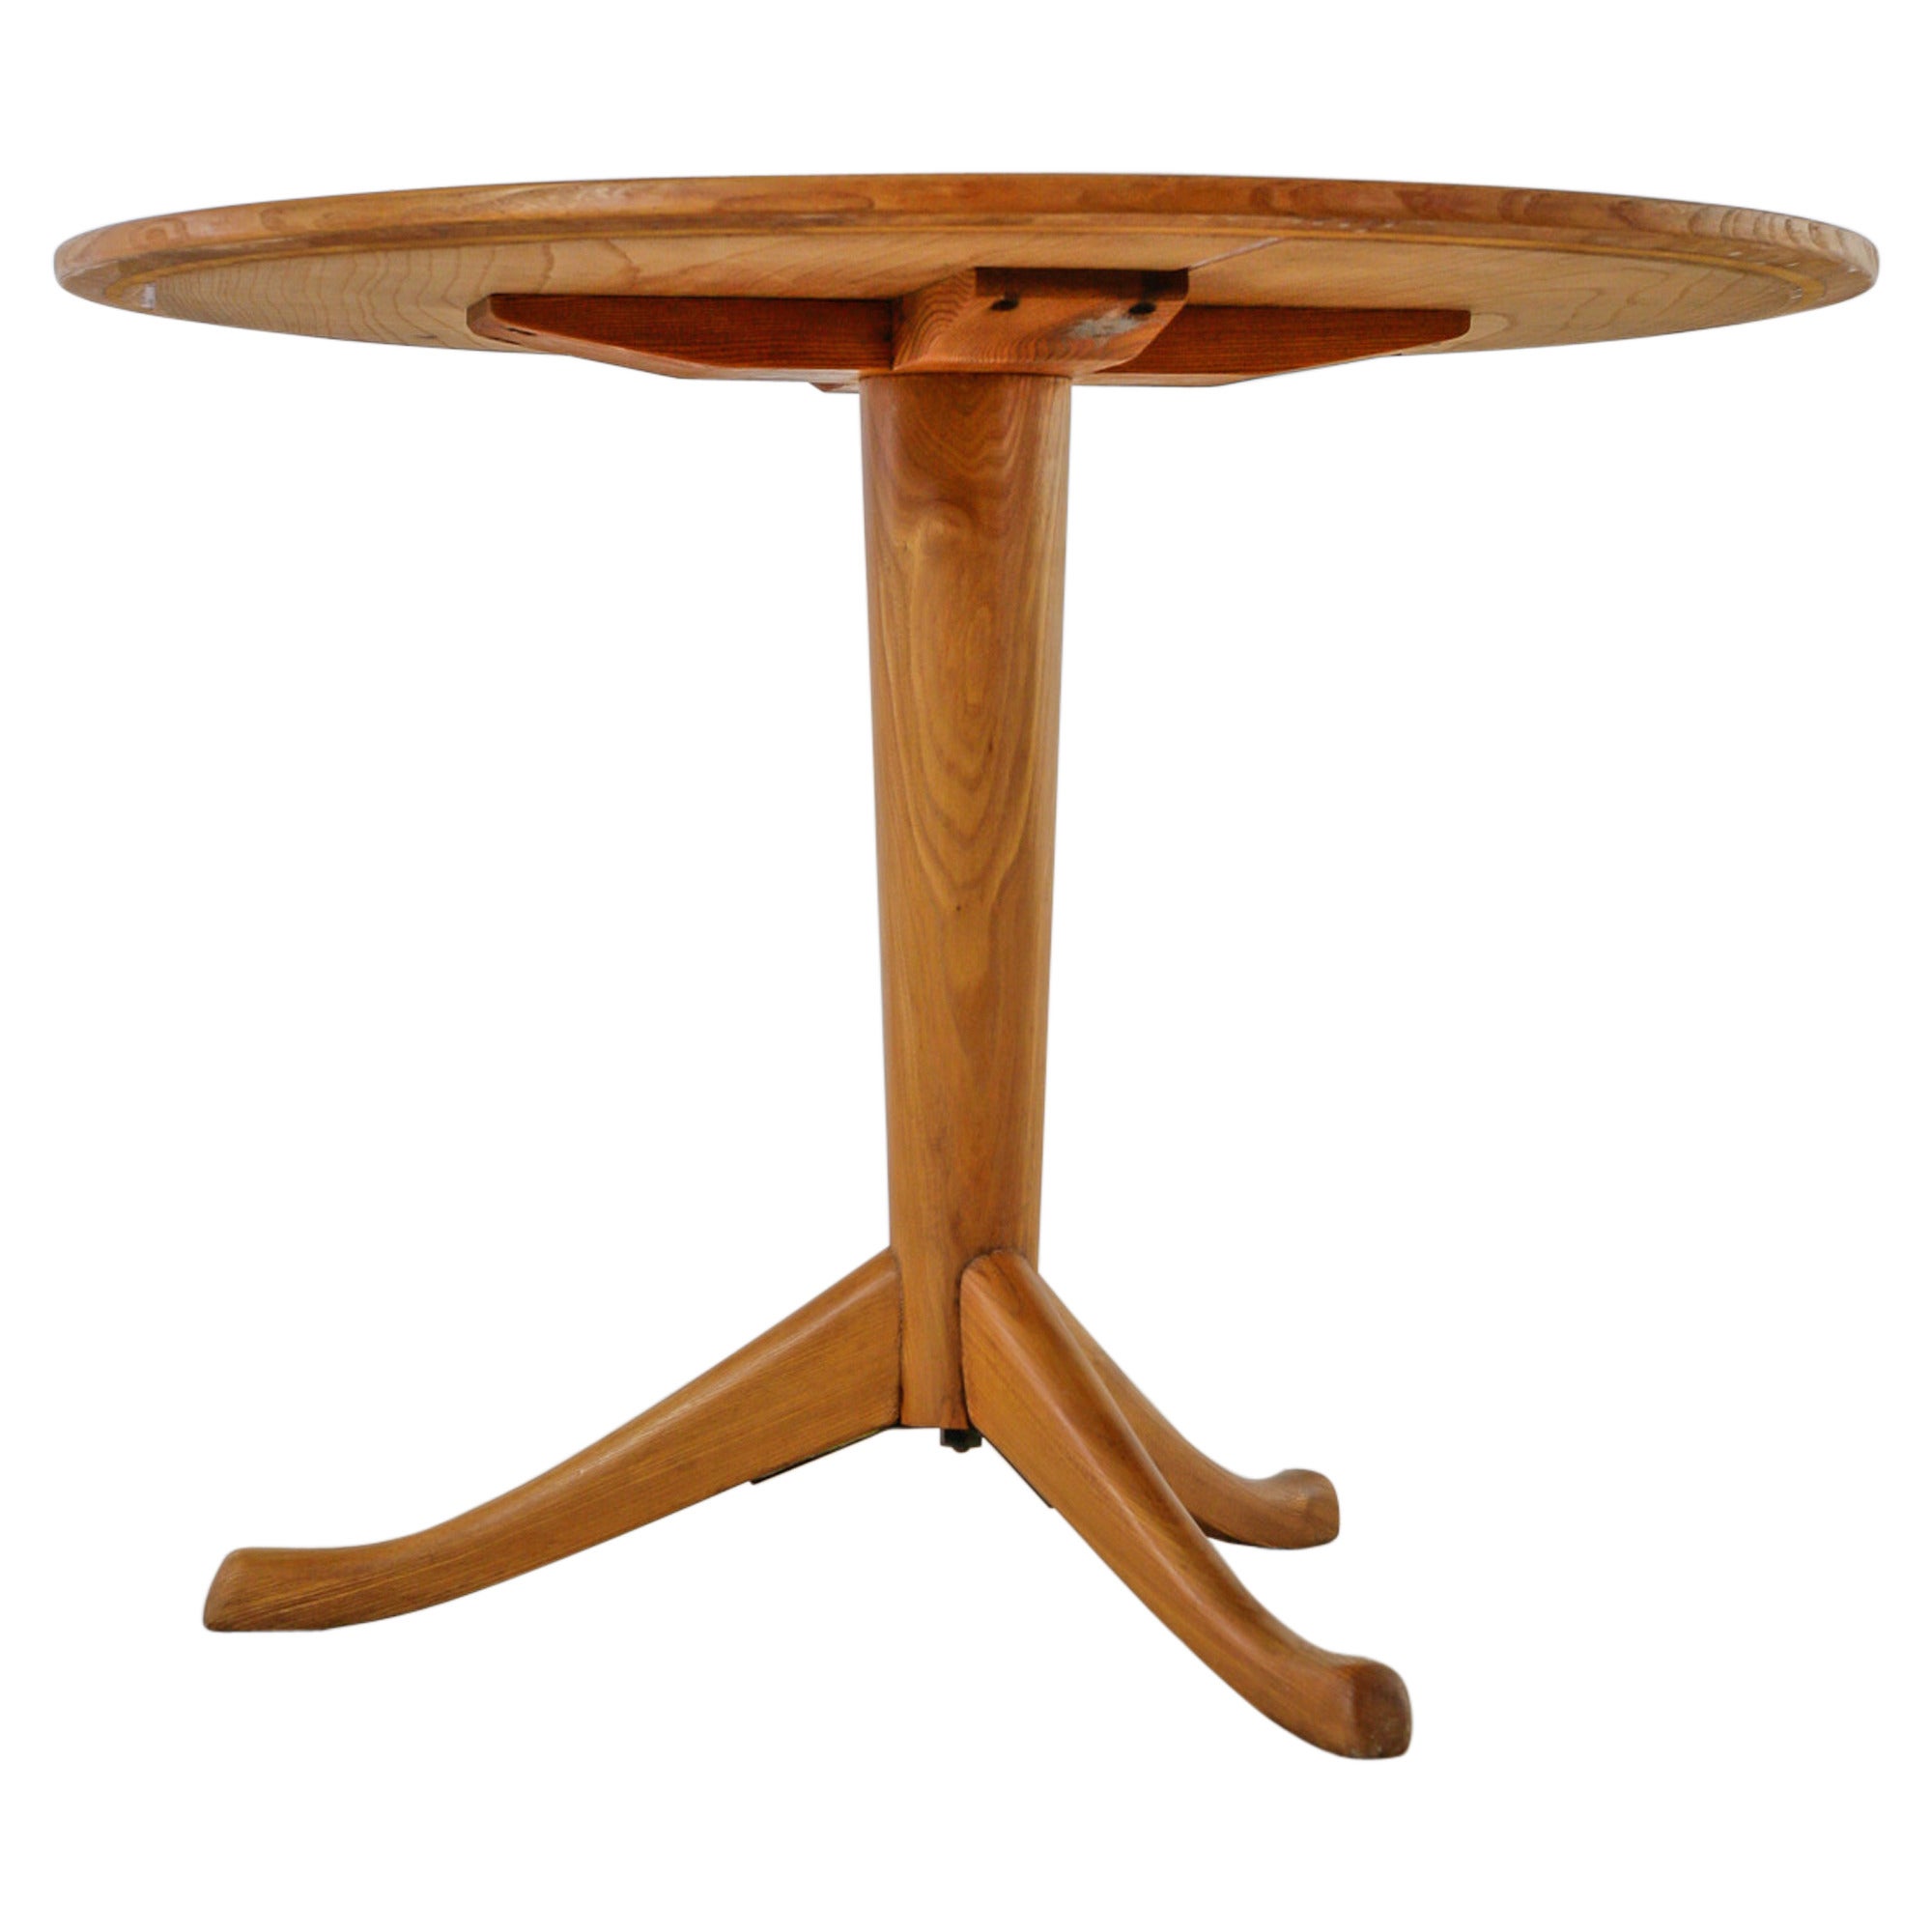 Axel Larsson Round Gueridon Table, Svenska Möbelfabriken, Bodafors, 1930s For Sale